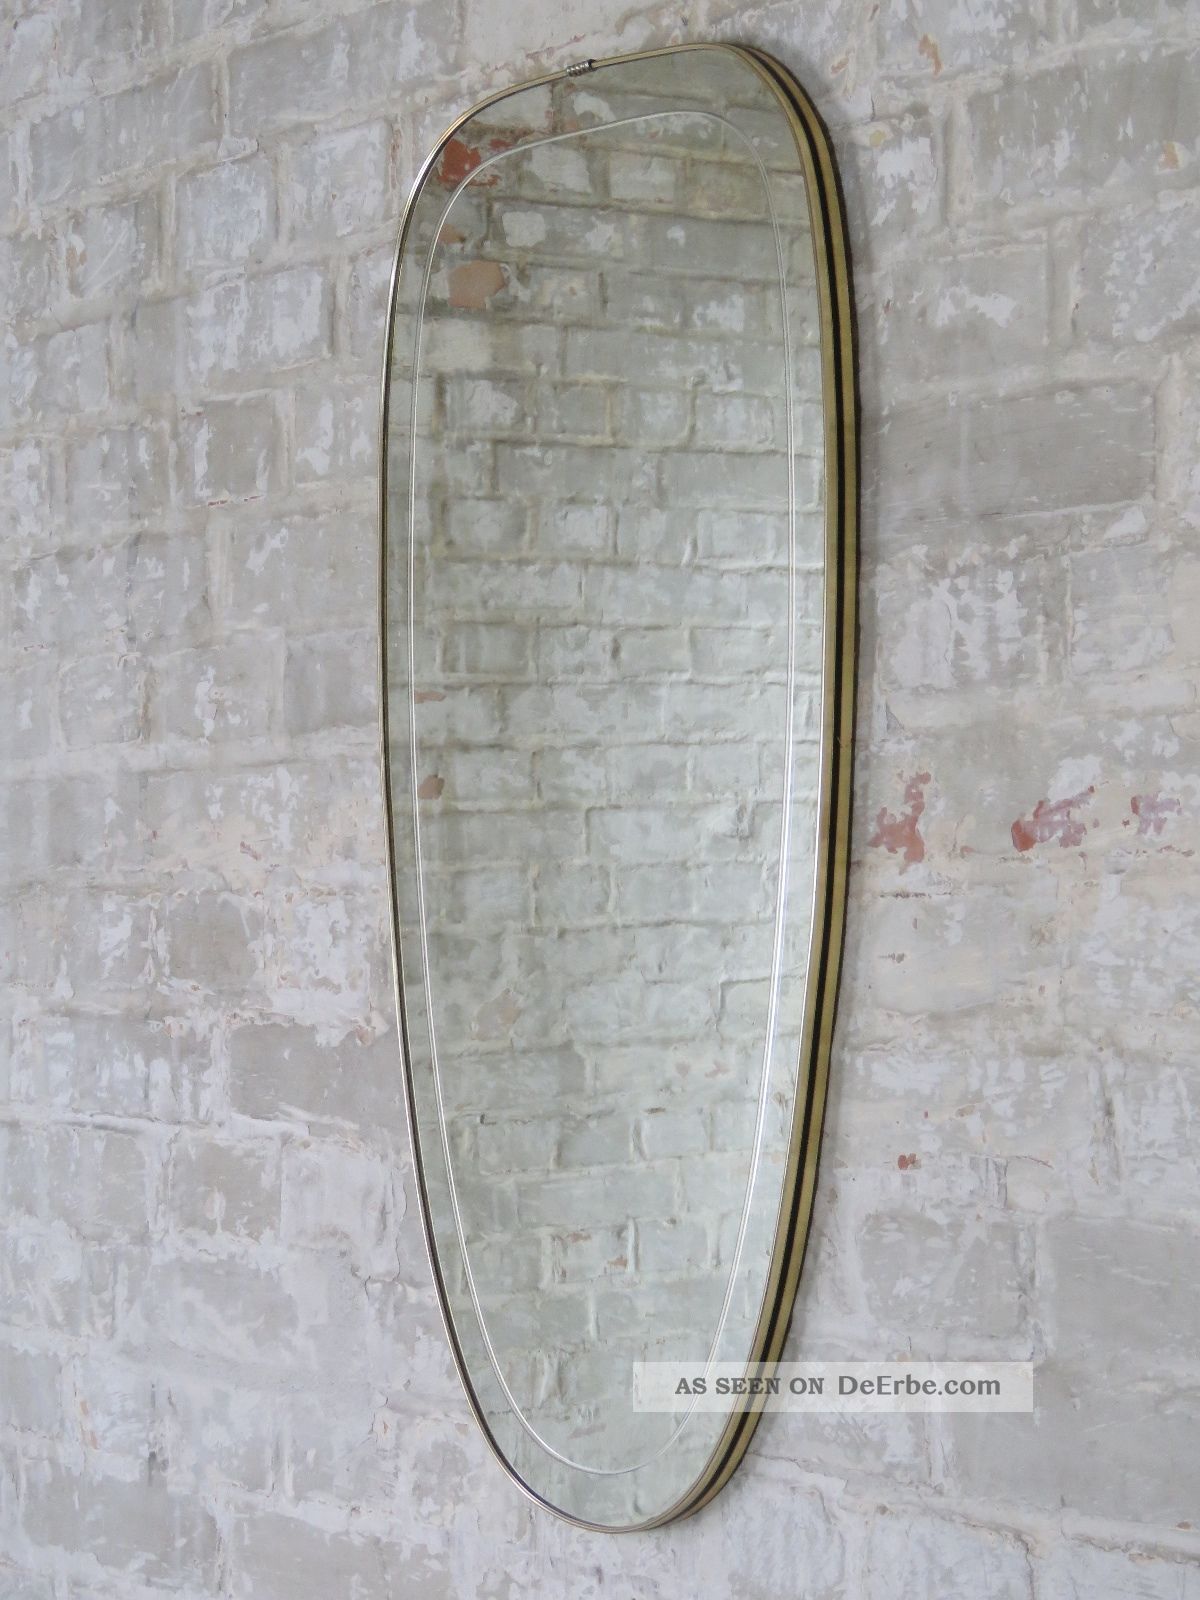 Zierspiegel Spiegel Wandspiegel Mirror 50er 60er Jahre Vintage 50s 60s Spiegel Bild